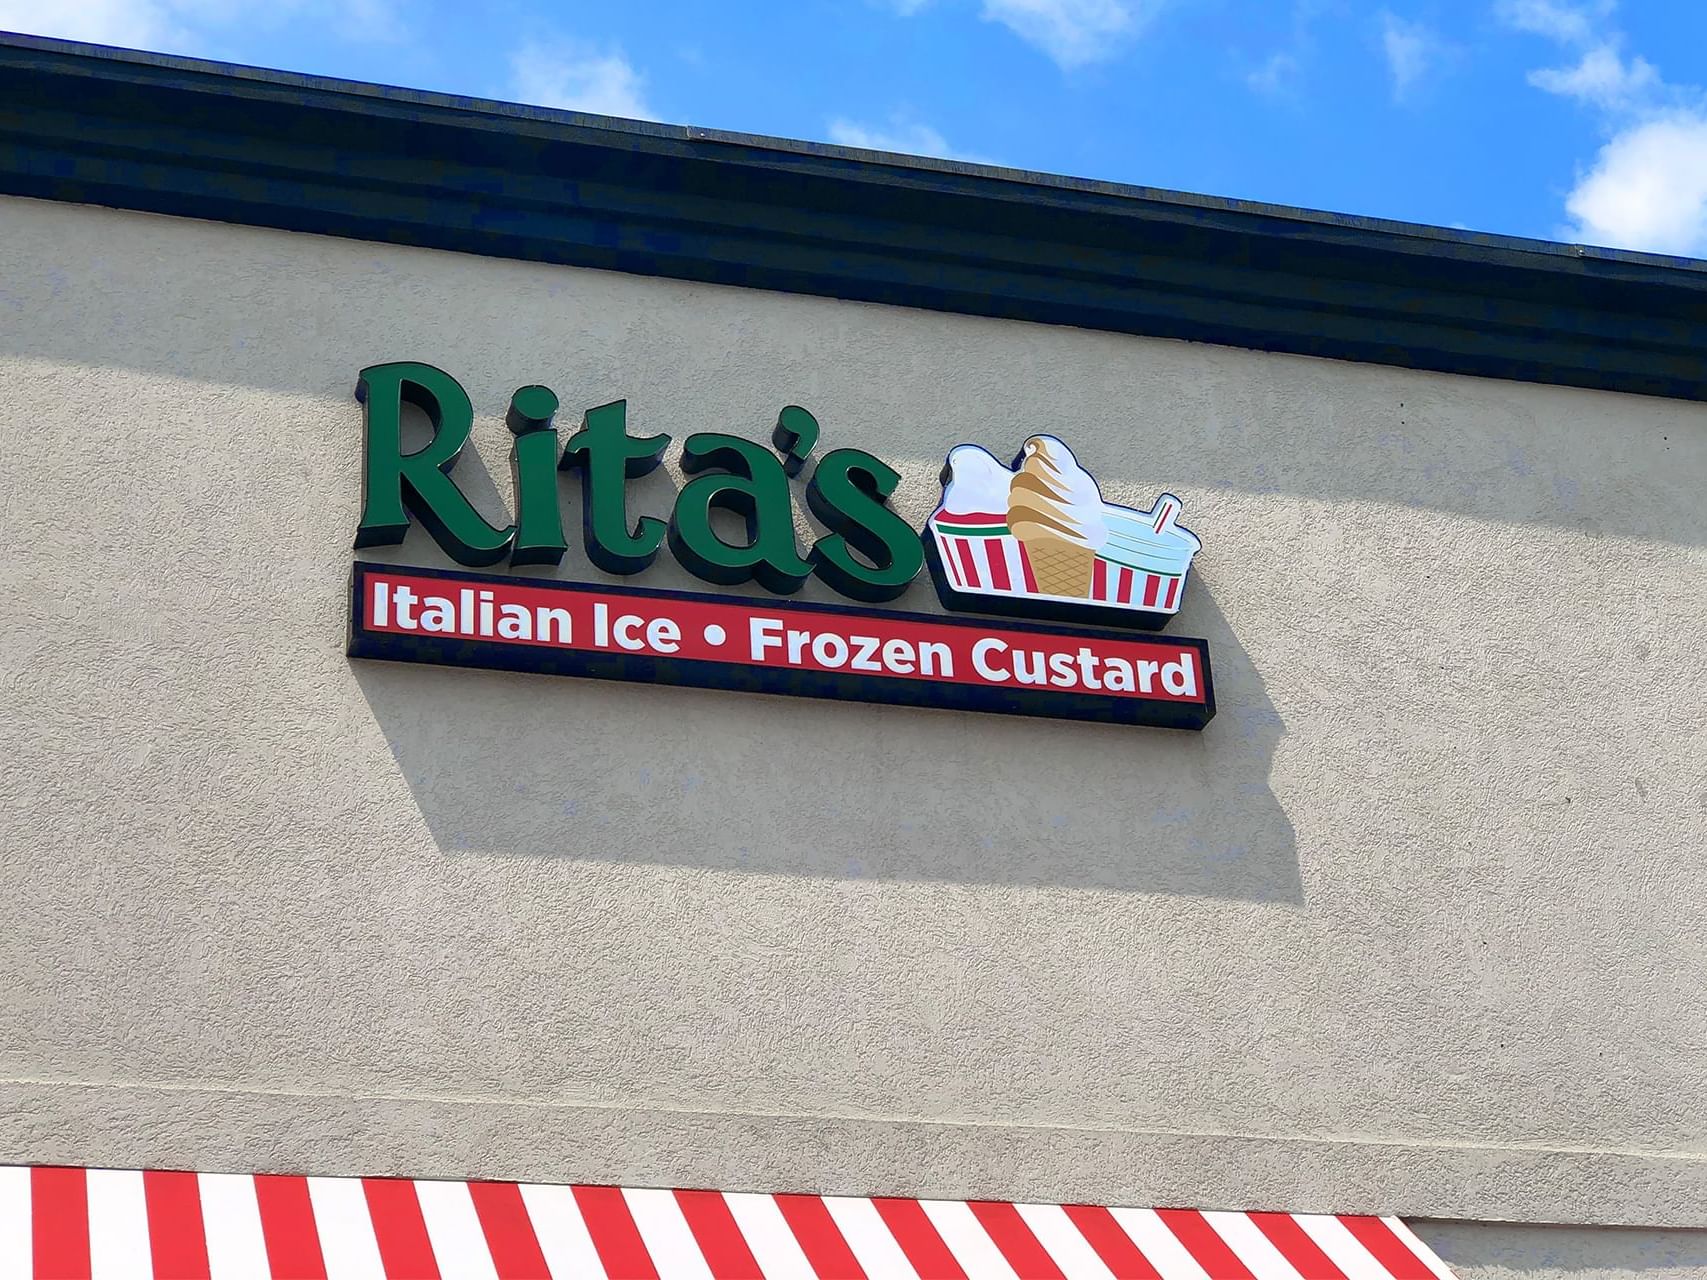 Rita's Italian Ice & Frozen Custard in Pigeon Forge, TN